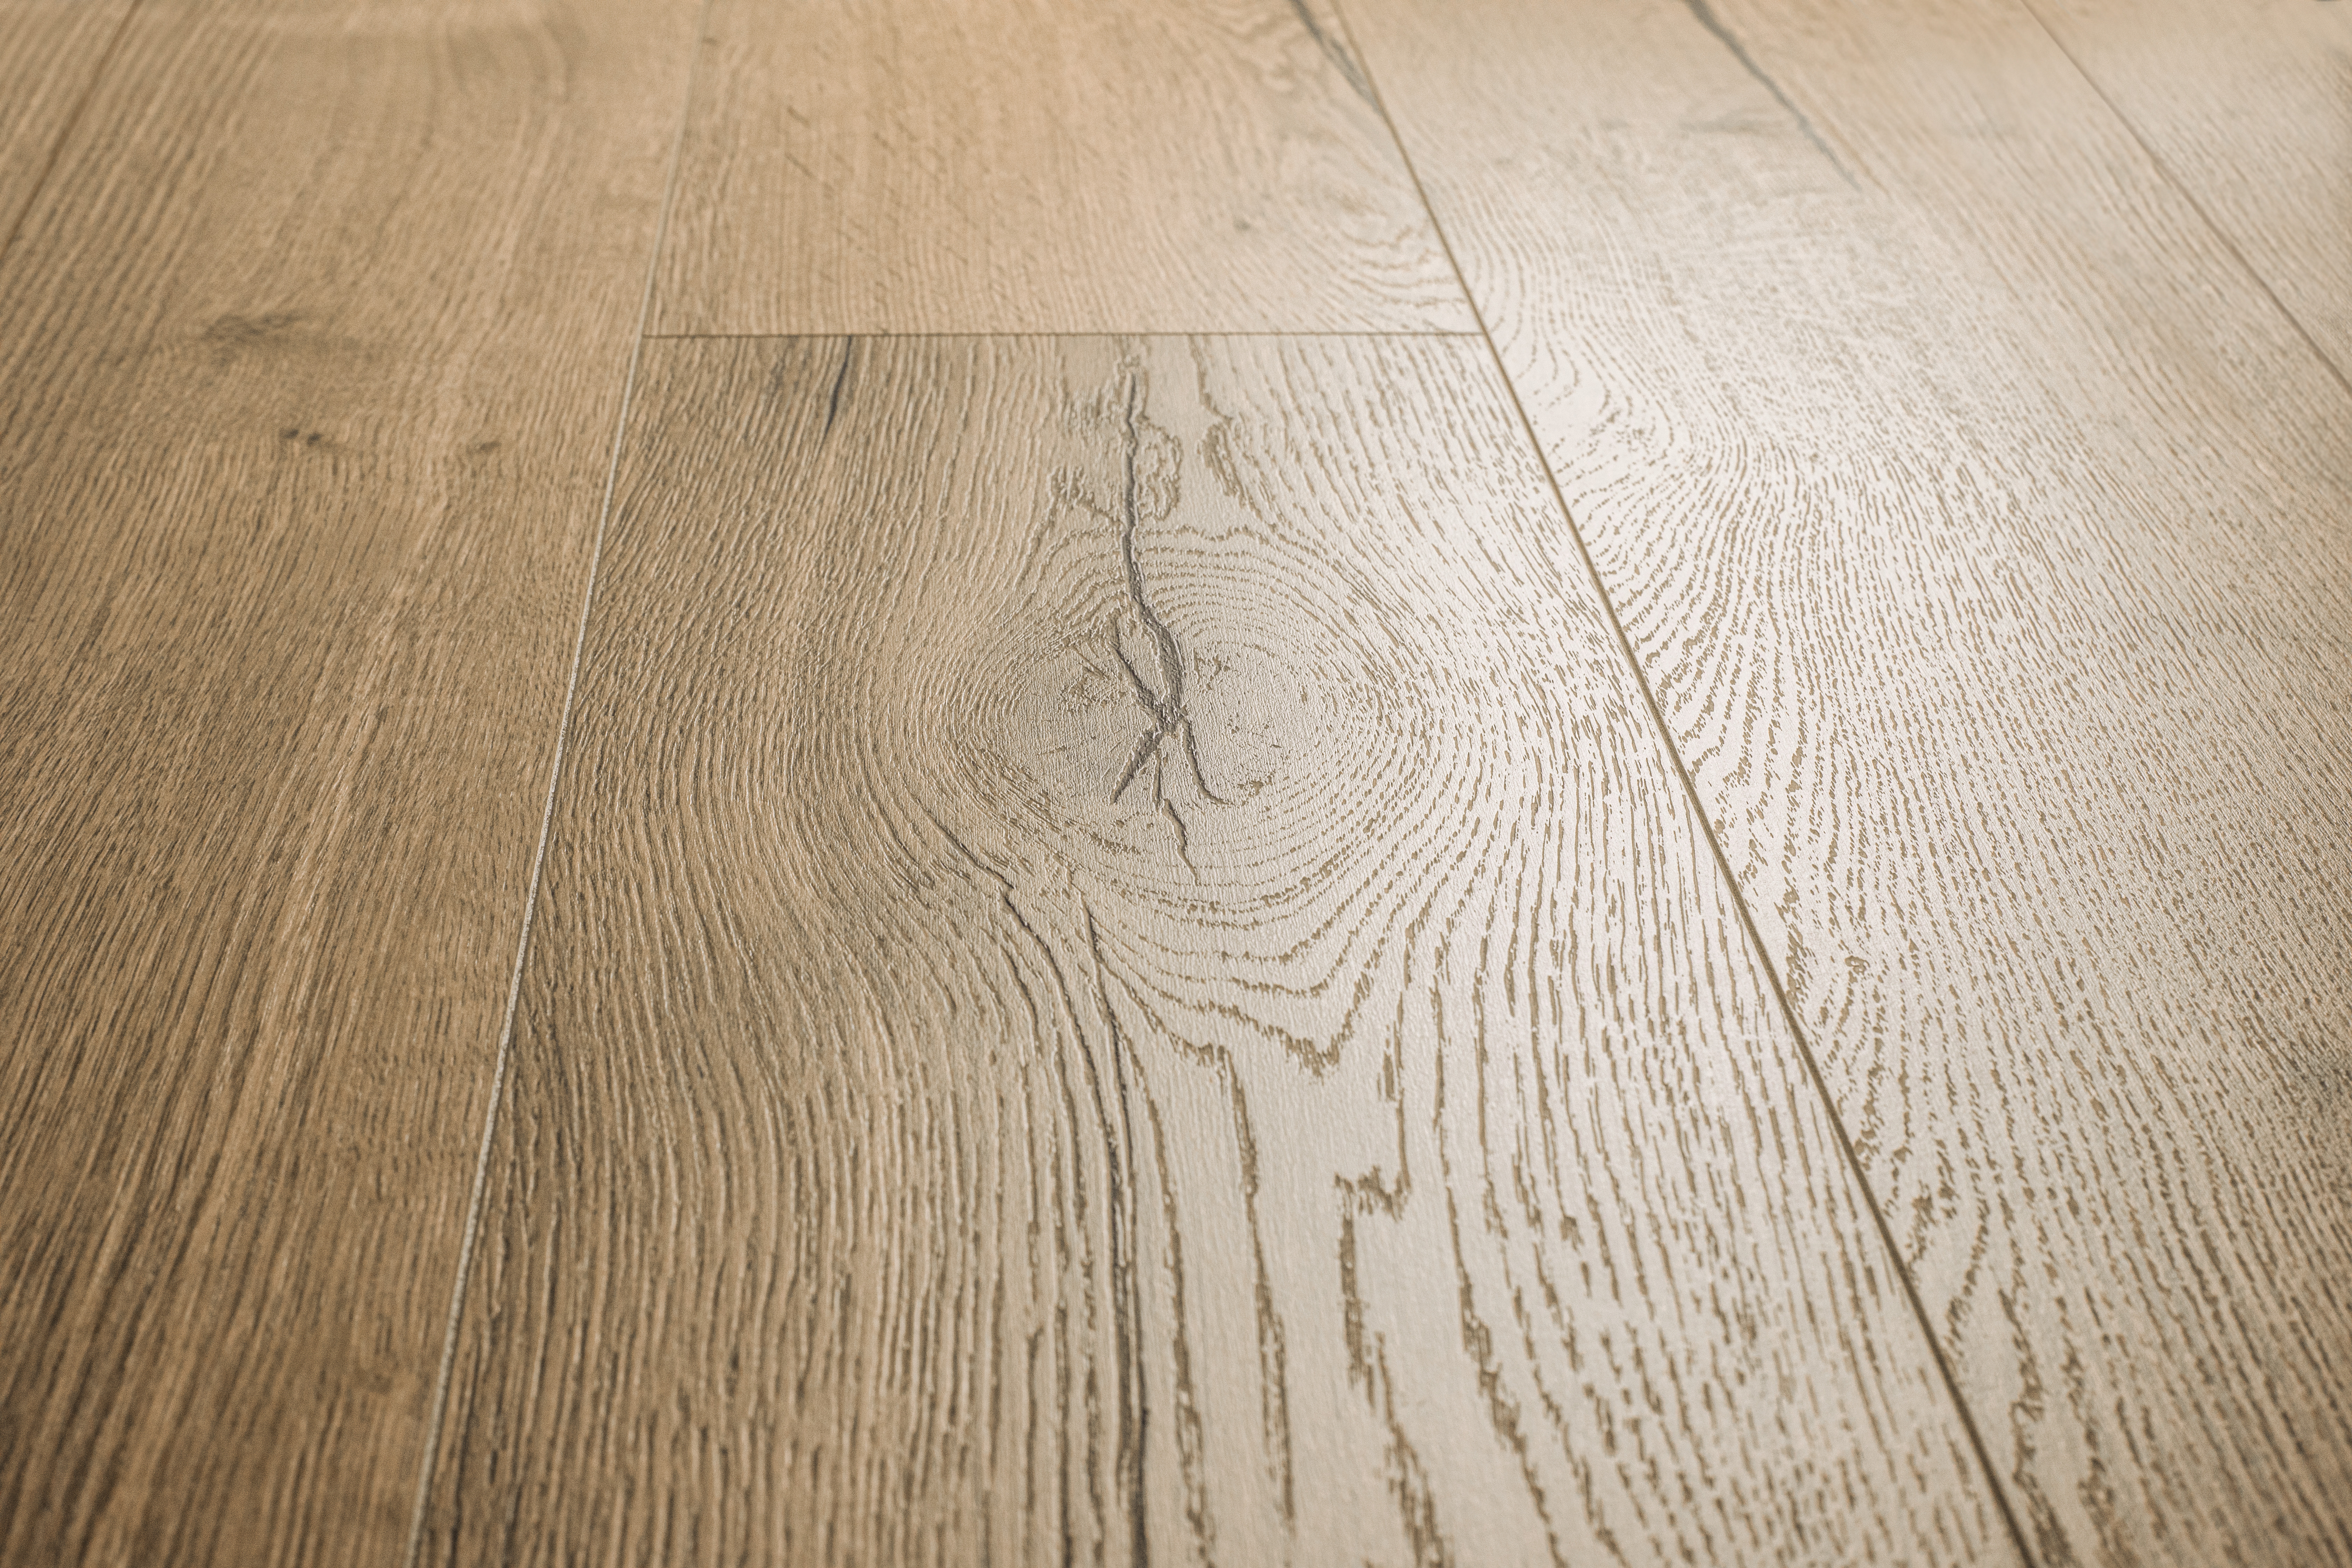 Laminado: primer plano del aspecto de madera real con textura en la superficie